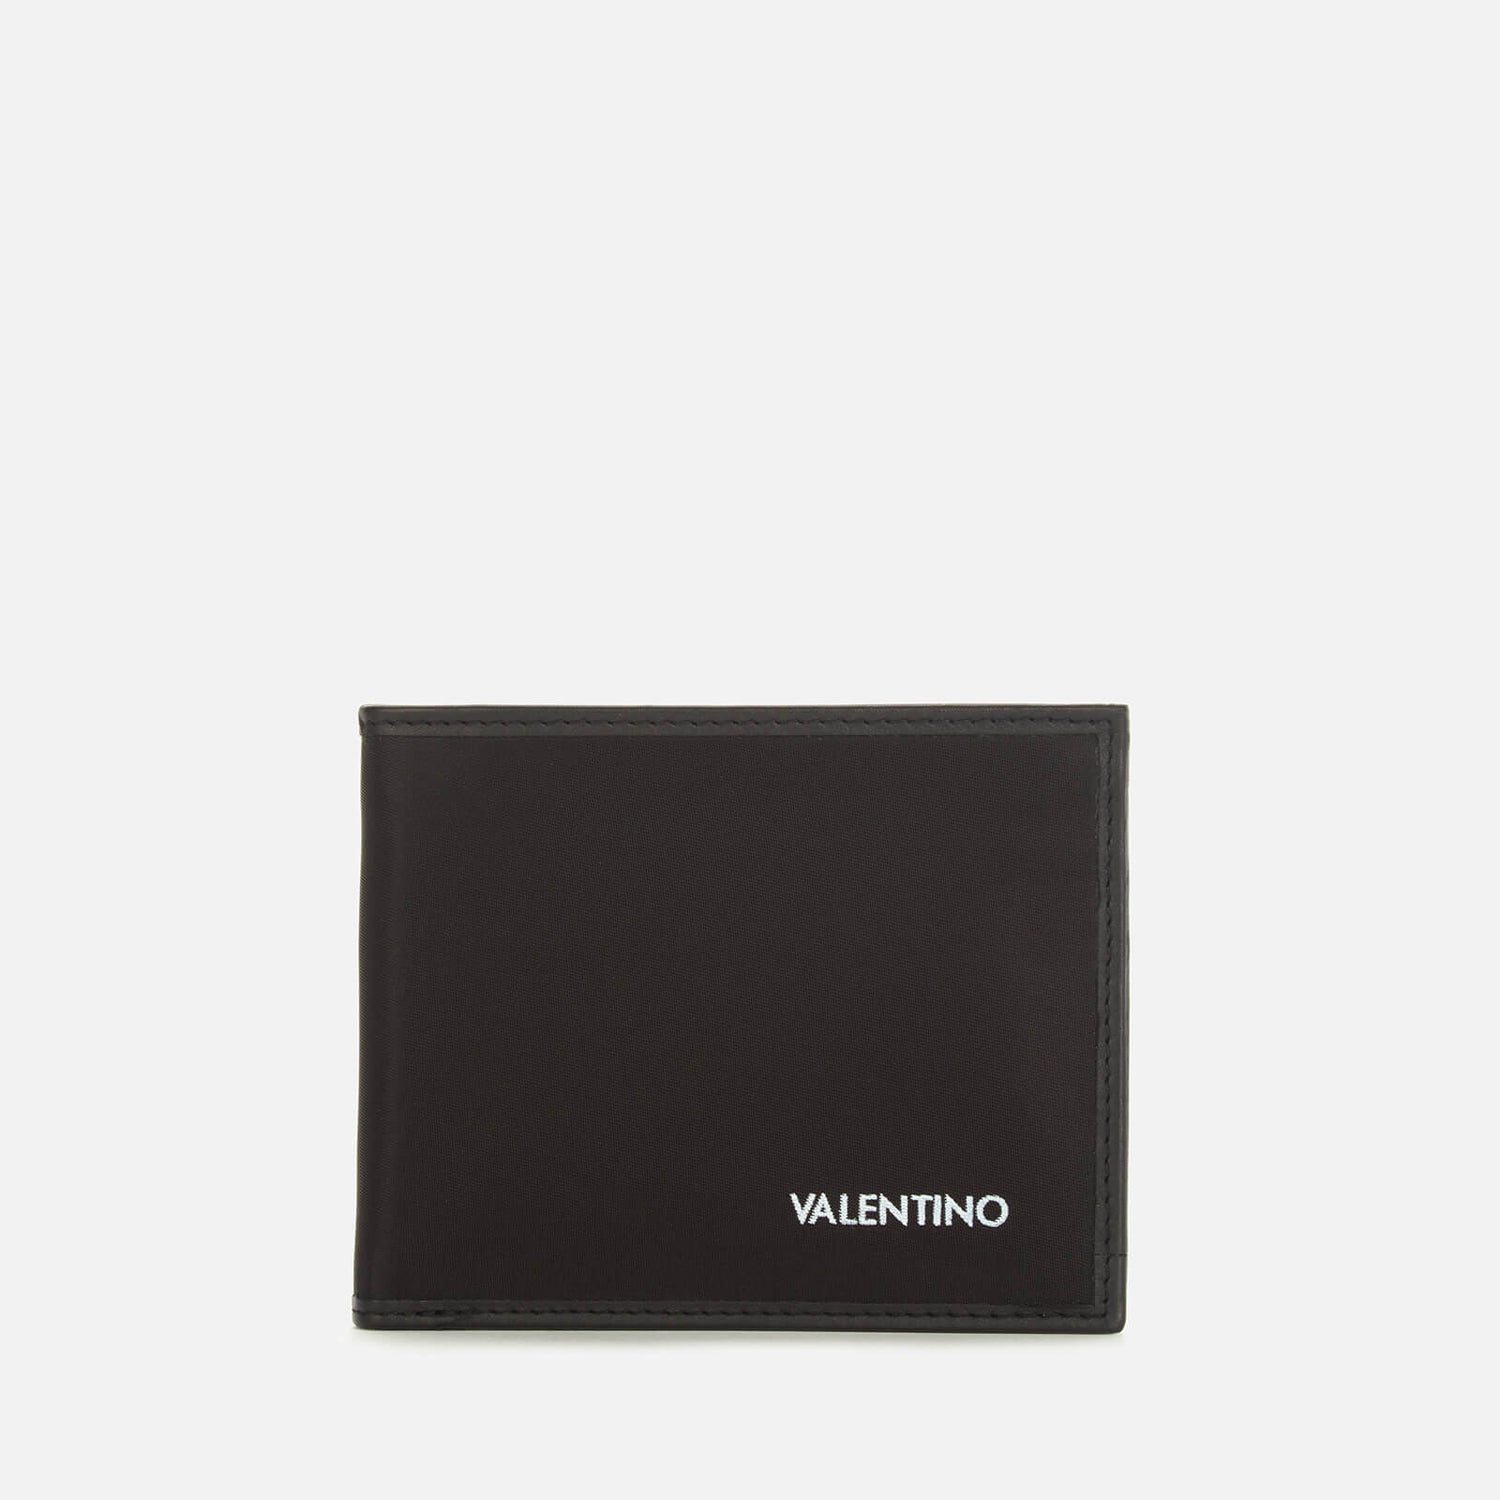 Valentino Men's Kylo Bifold Wallet - Black